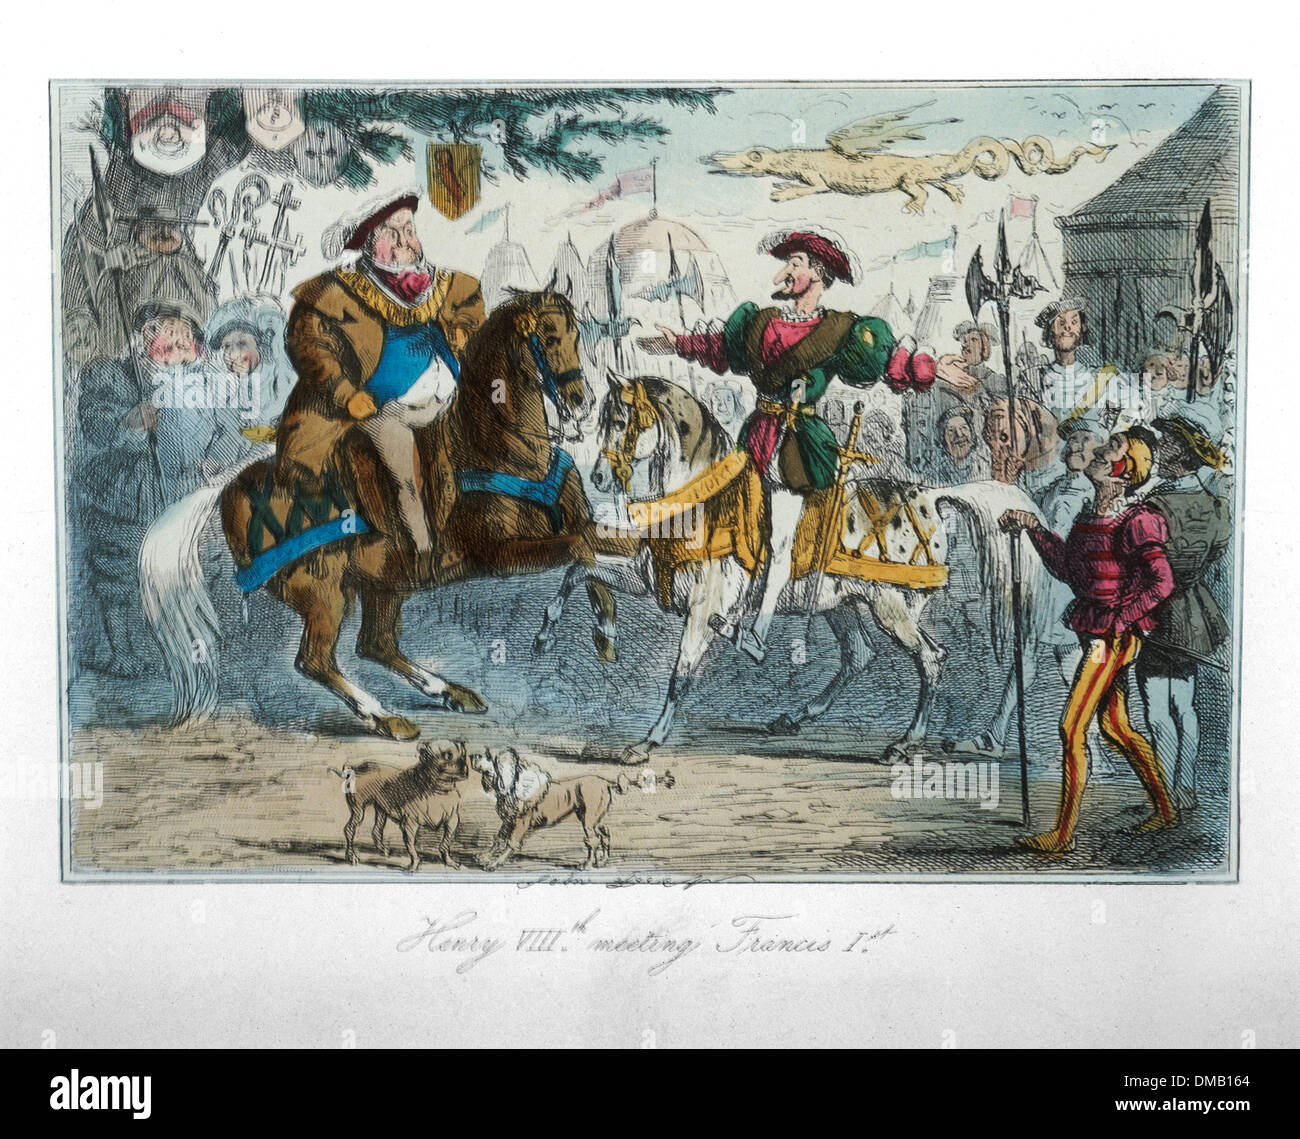 Henry VIII Réunion Francis I, bande dessinée Histoire de l'Angleterre, gravure couleur par John Leech, 1850 Banque D'Images